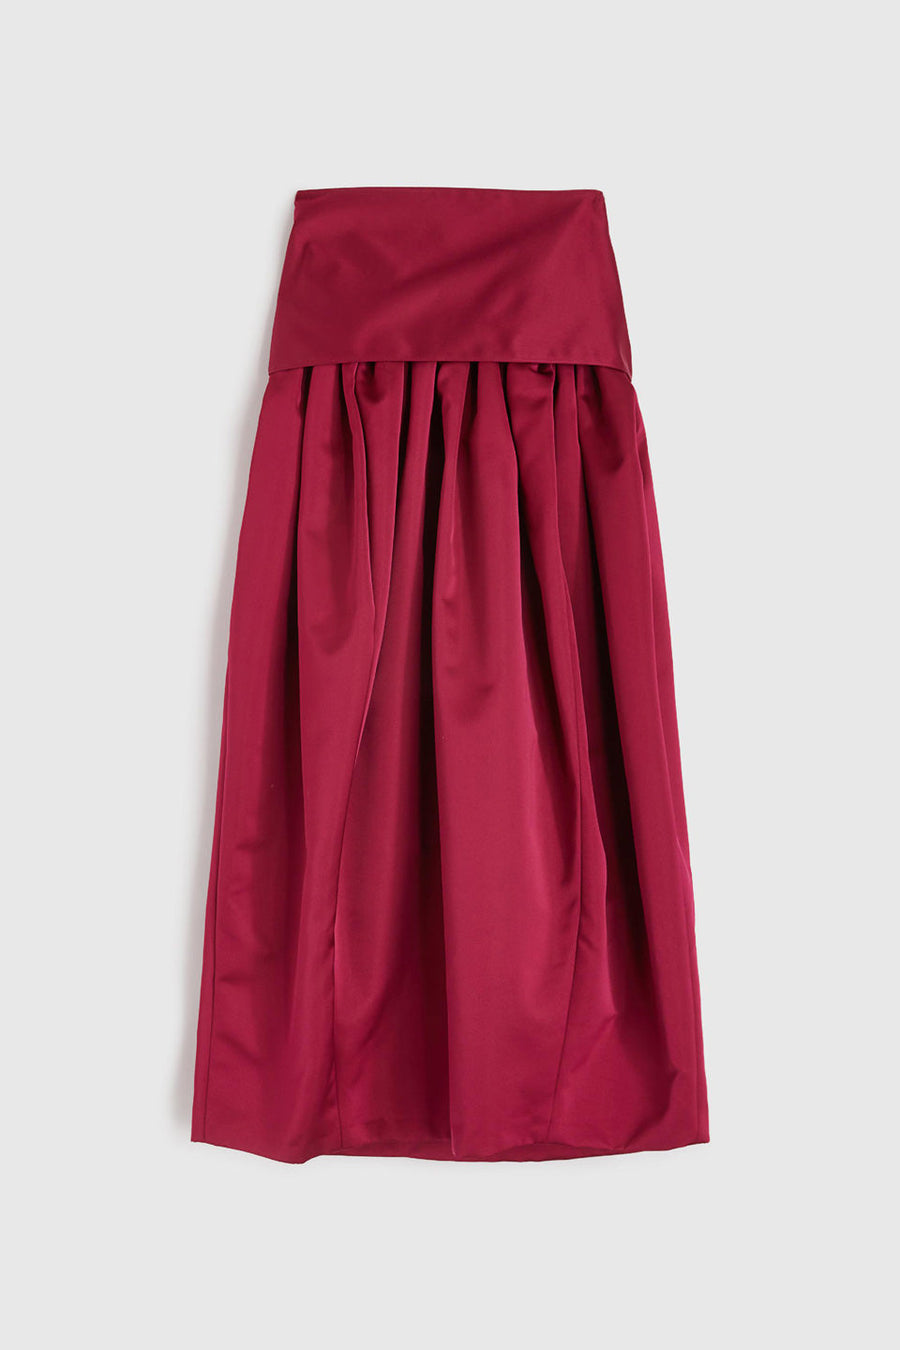 rochas belted midi skirt in duchesses red back